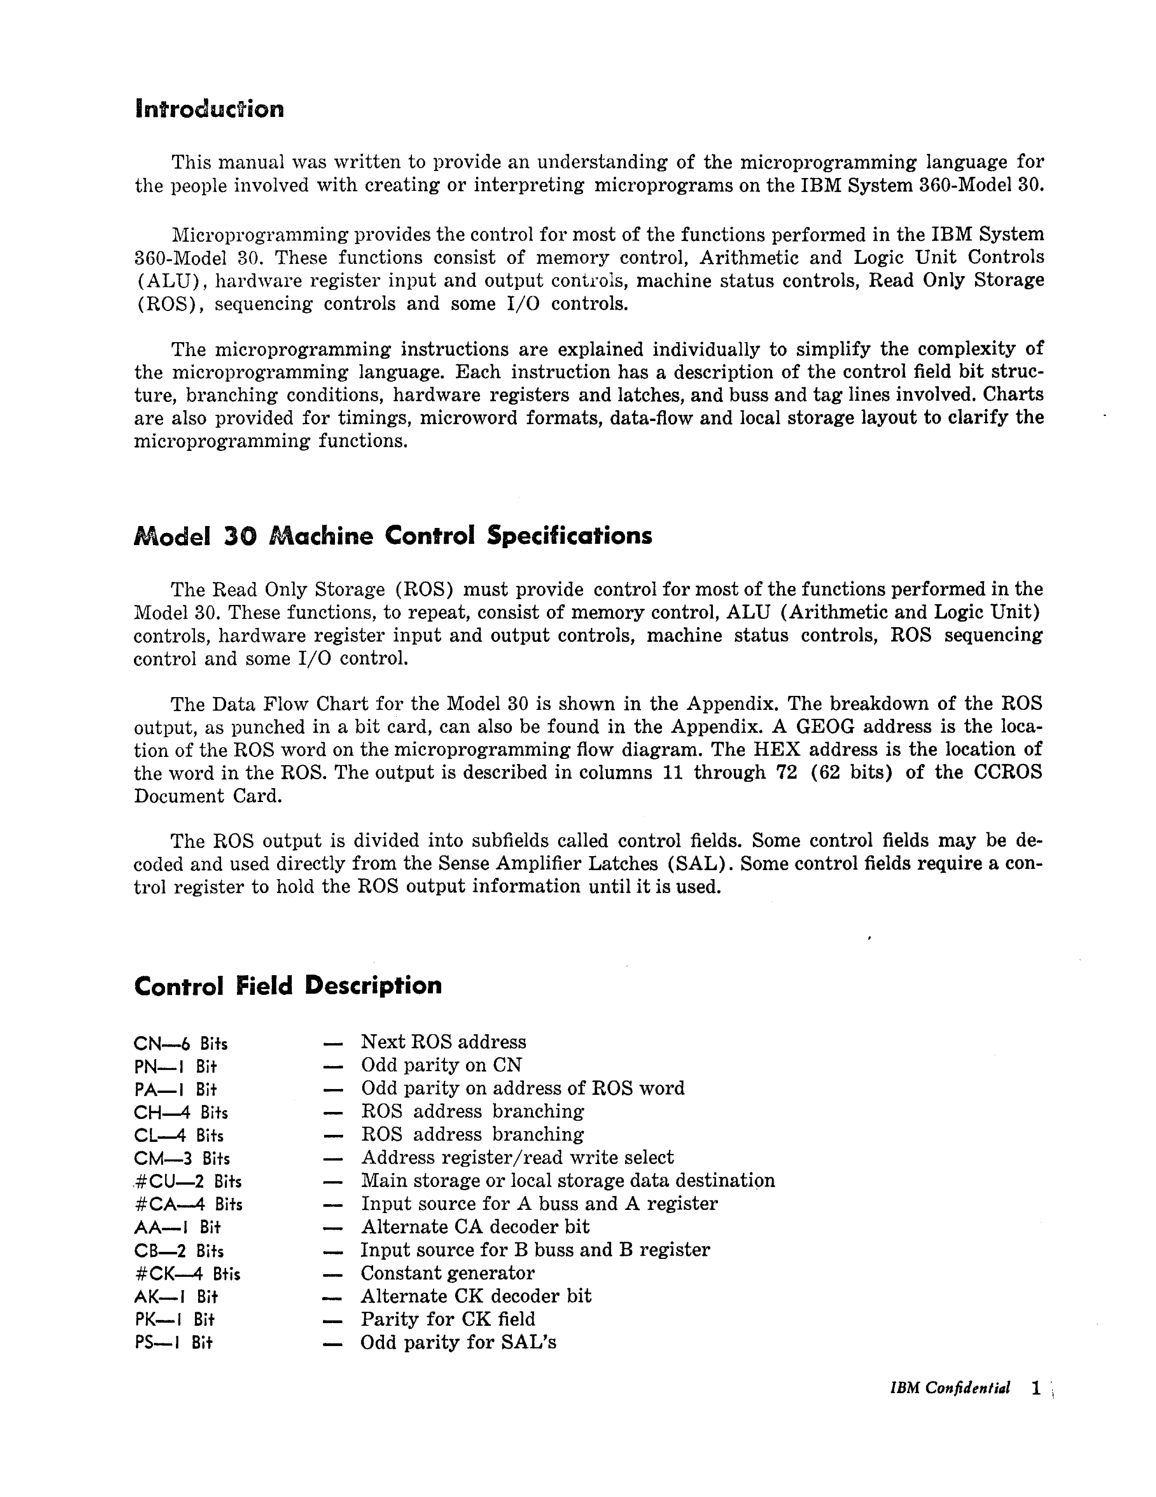 Model_30_Microprogramming_Lang.pdf page 2